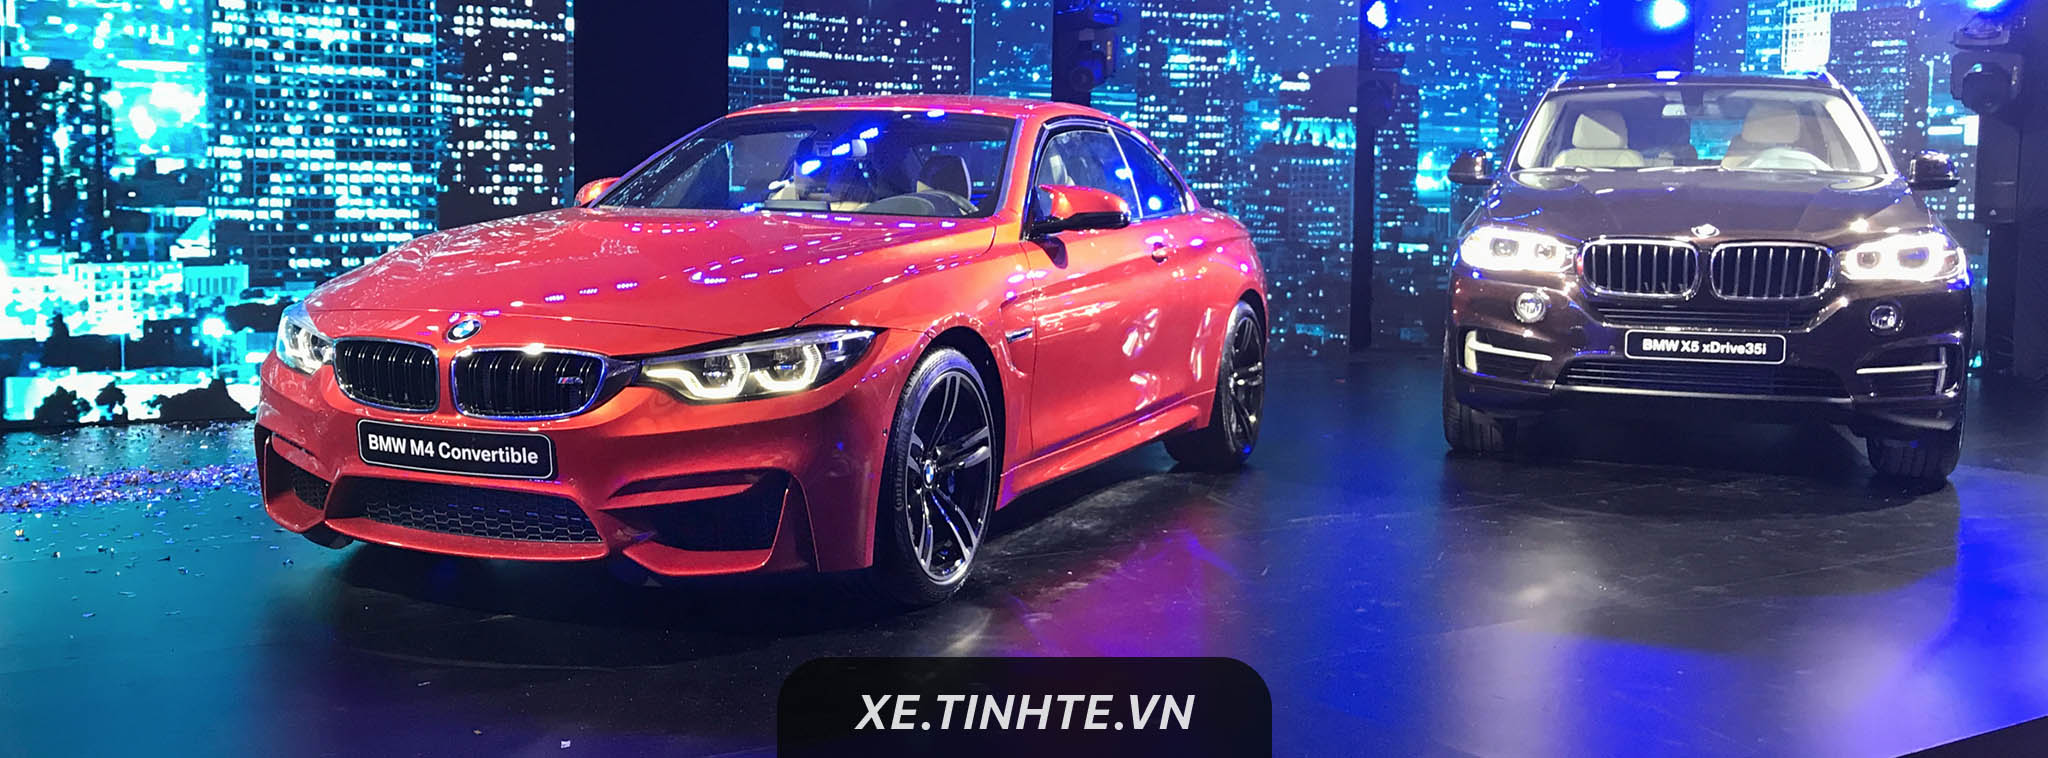 BMW chính thức trở lại hoạt động tại Việt Nam, sẽ có thêm nhiều showroom dịch vụ mới